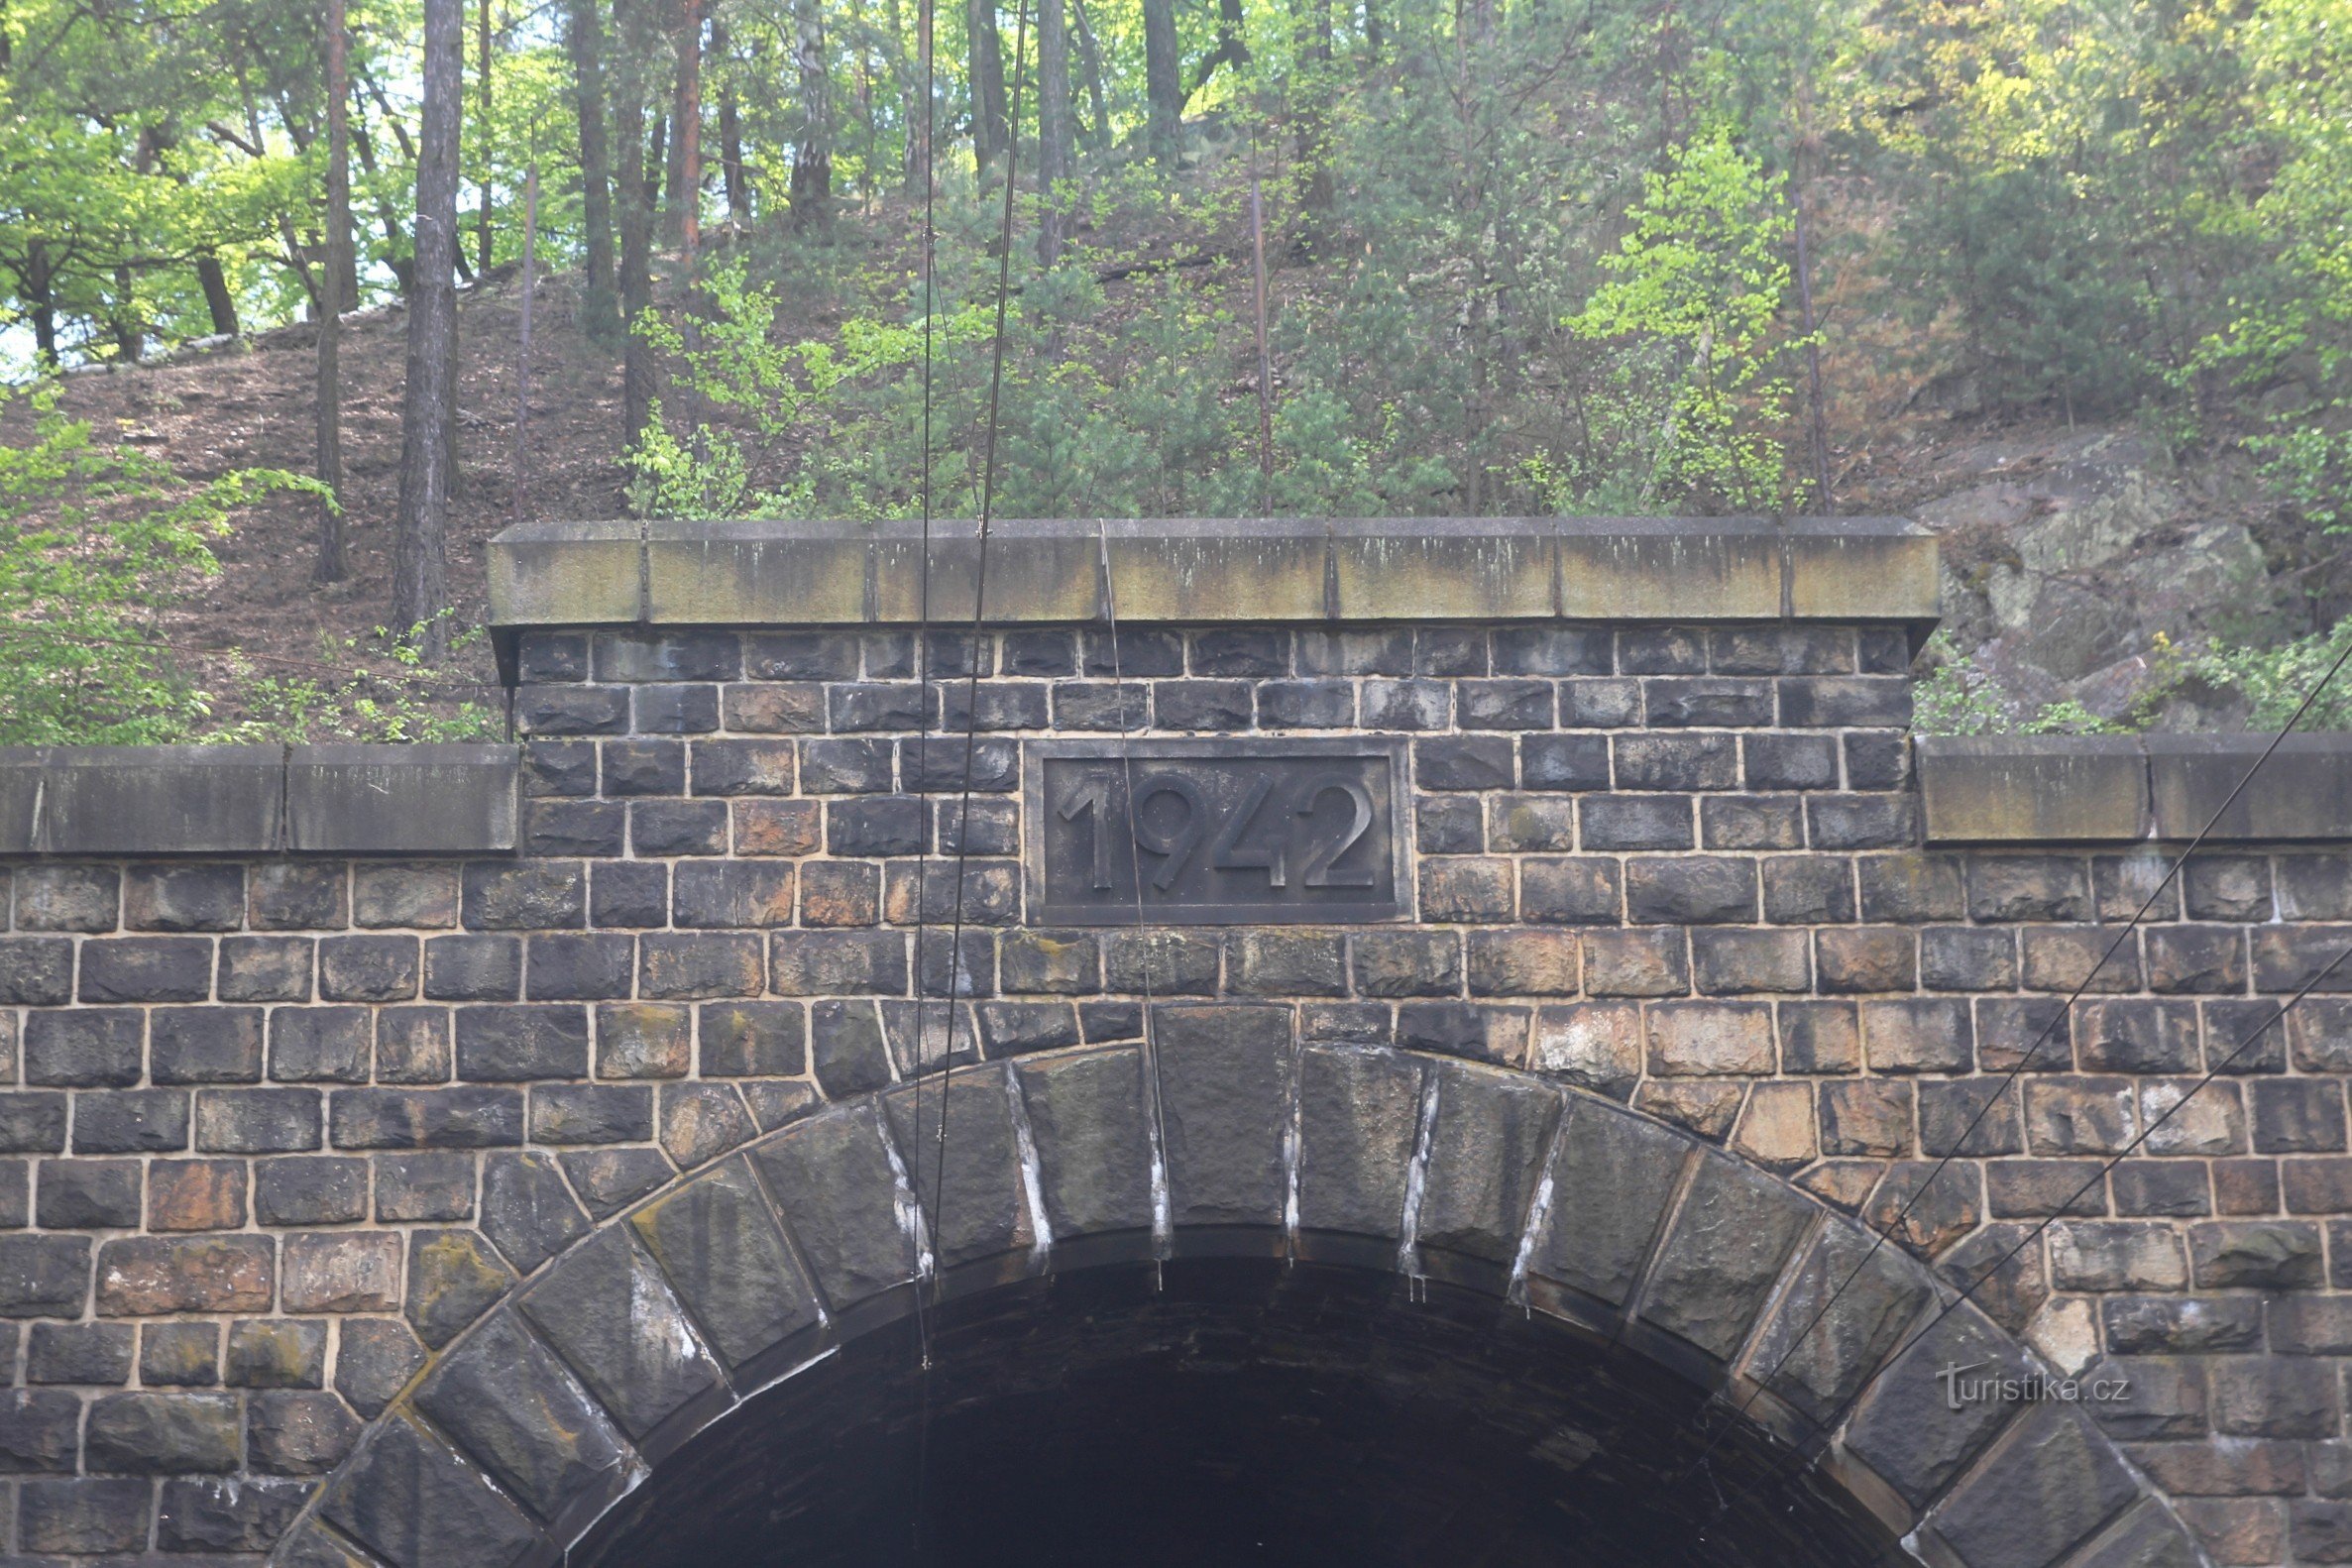 Górna część portalu jednego z tuneli z datą budowy